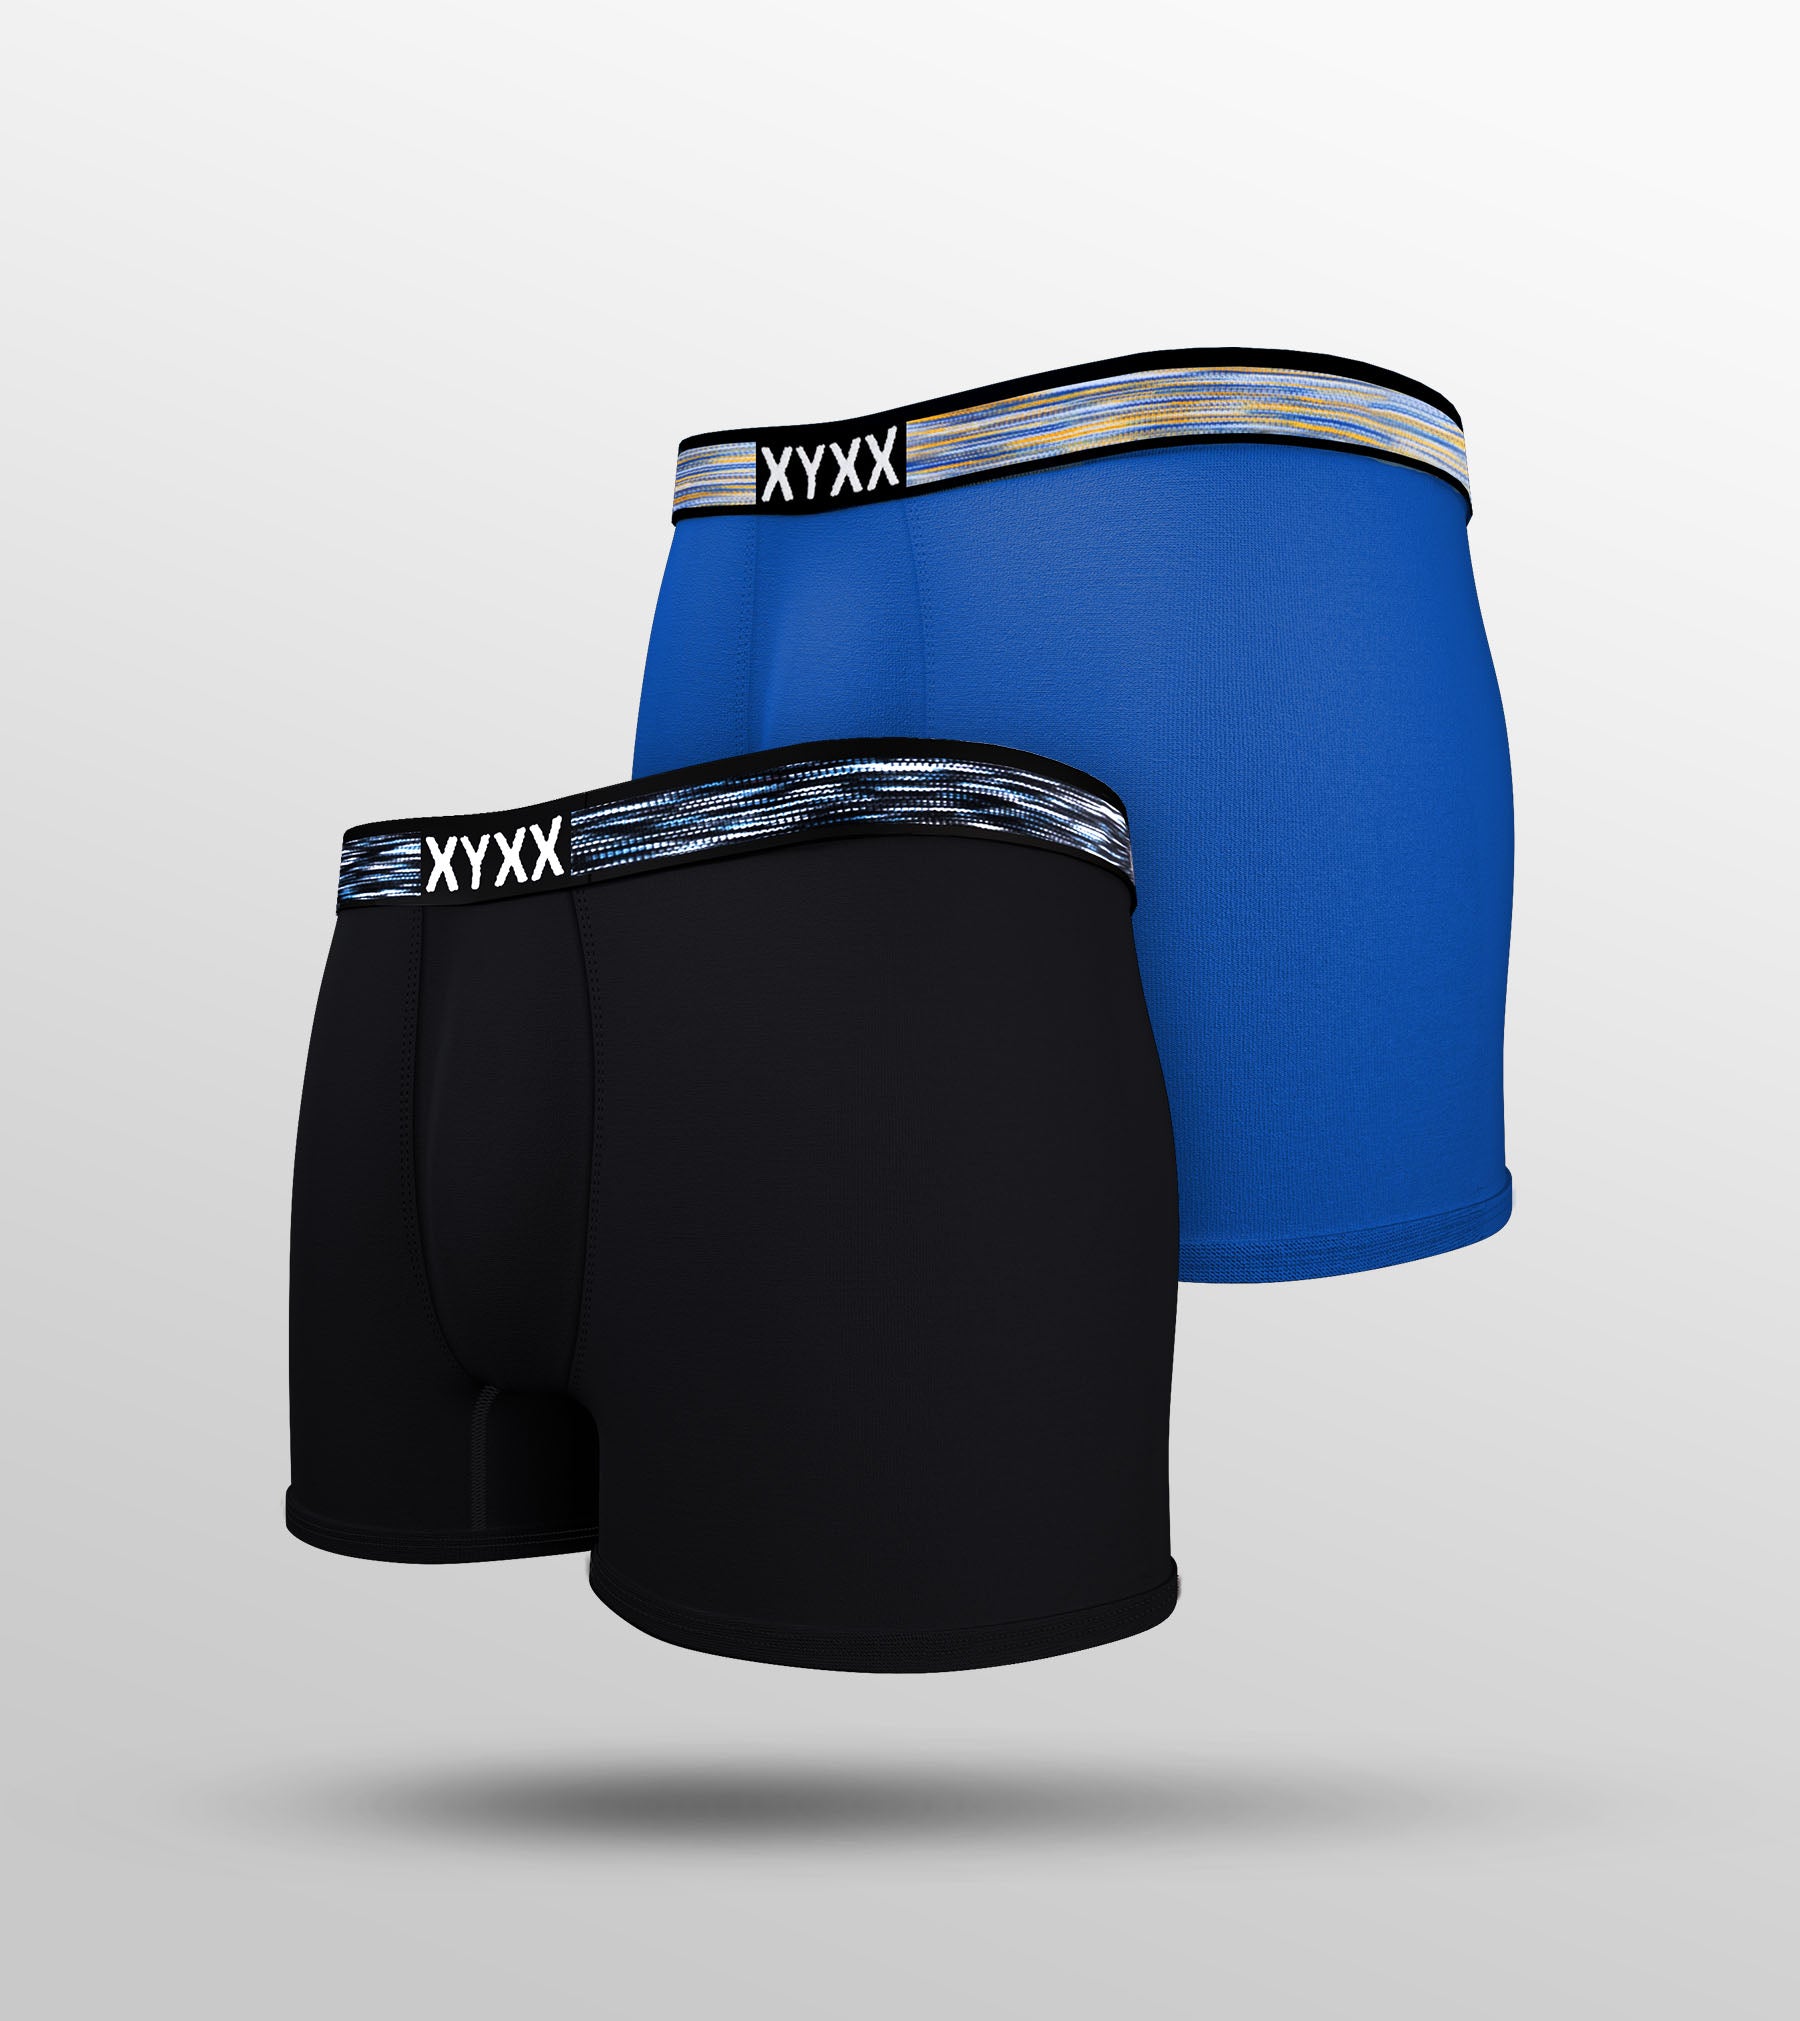 Hues Modal Trunks For Men Pack of 2 (Black, Light Blue) -  XYXX Mens Apparels